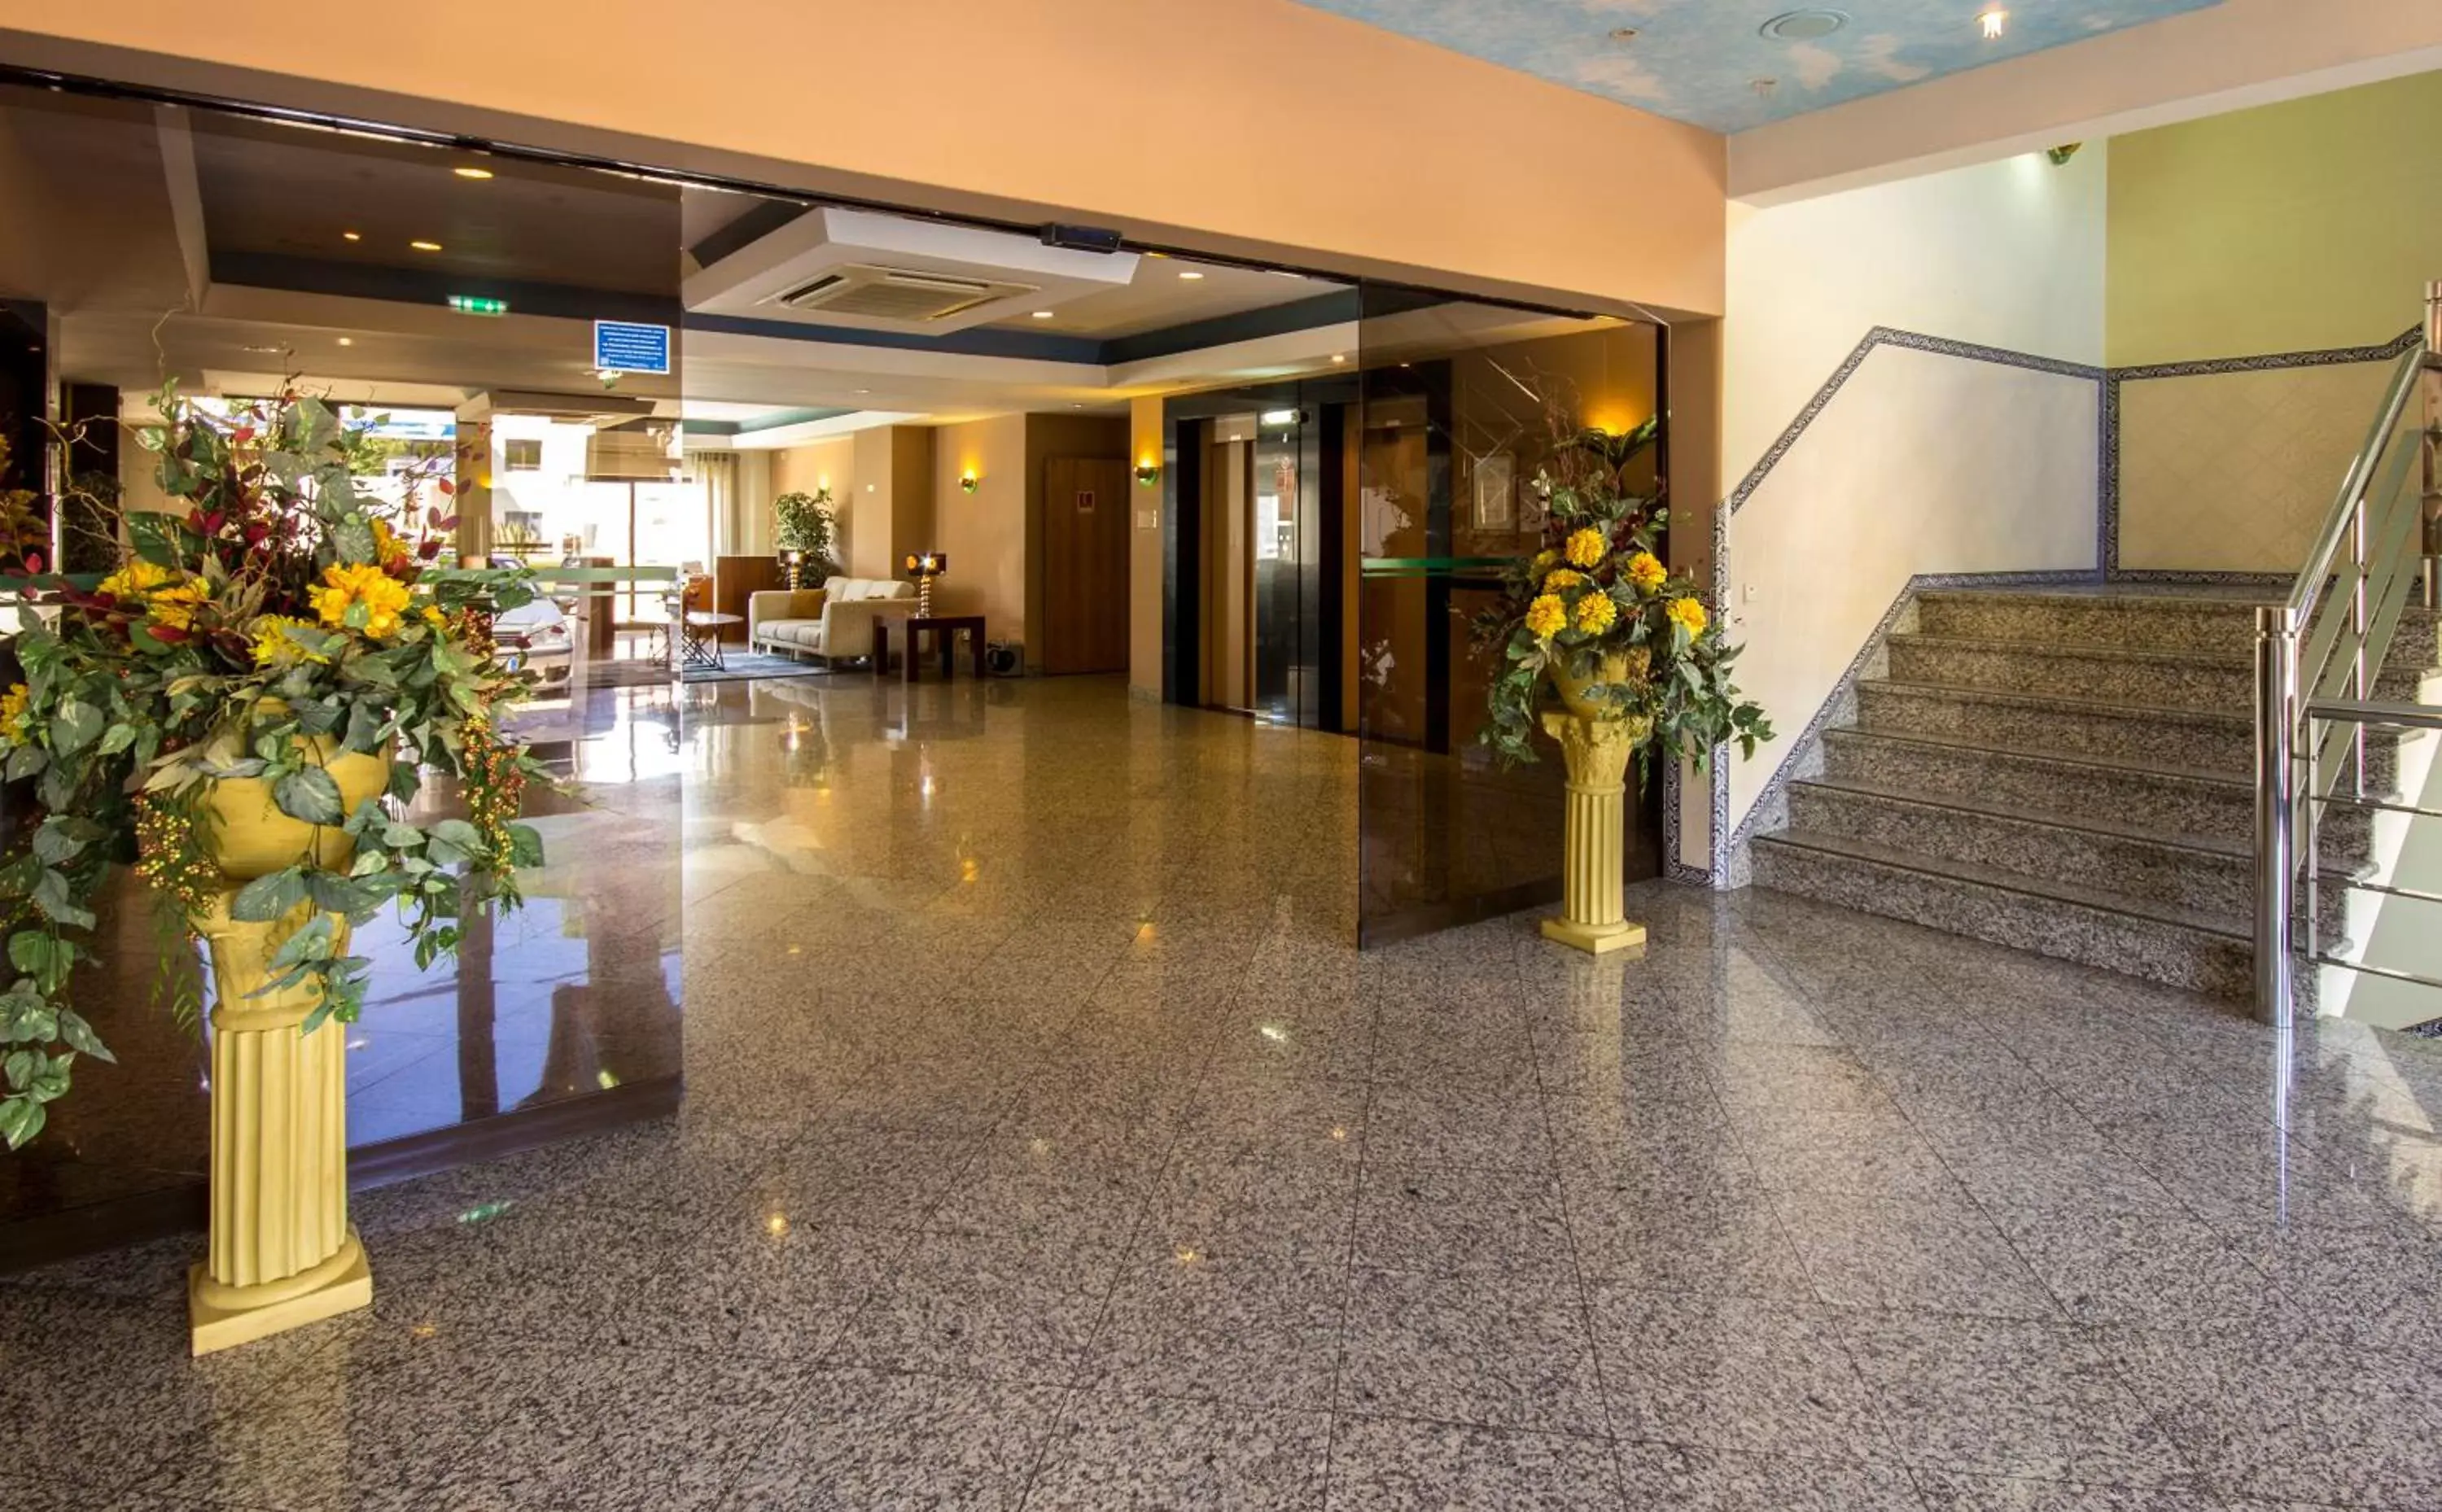 Lobby or reception, Lobby/Reception in Aparthotel Paladim & Alagoamar